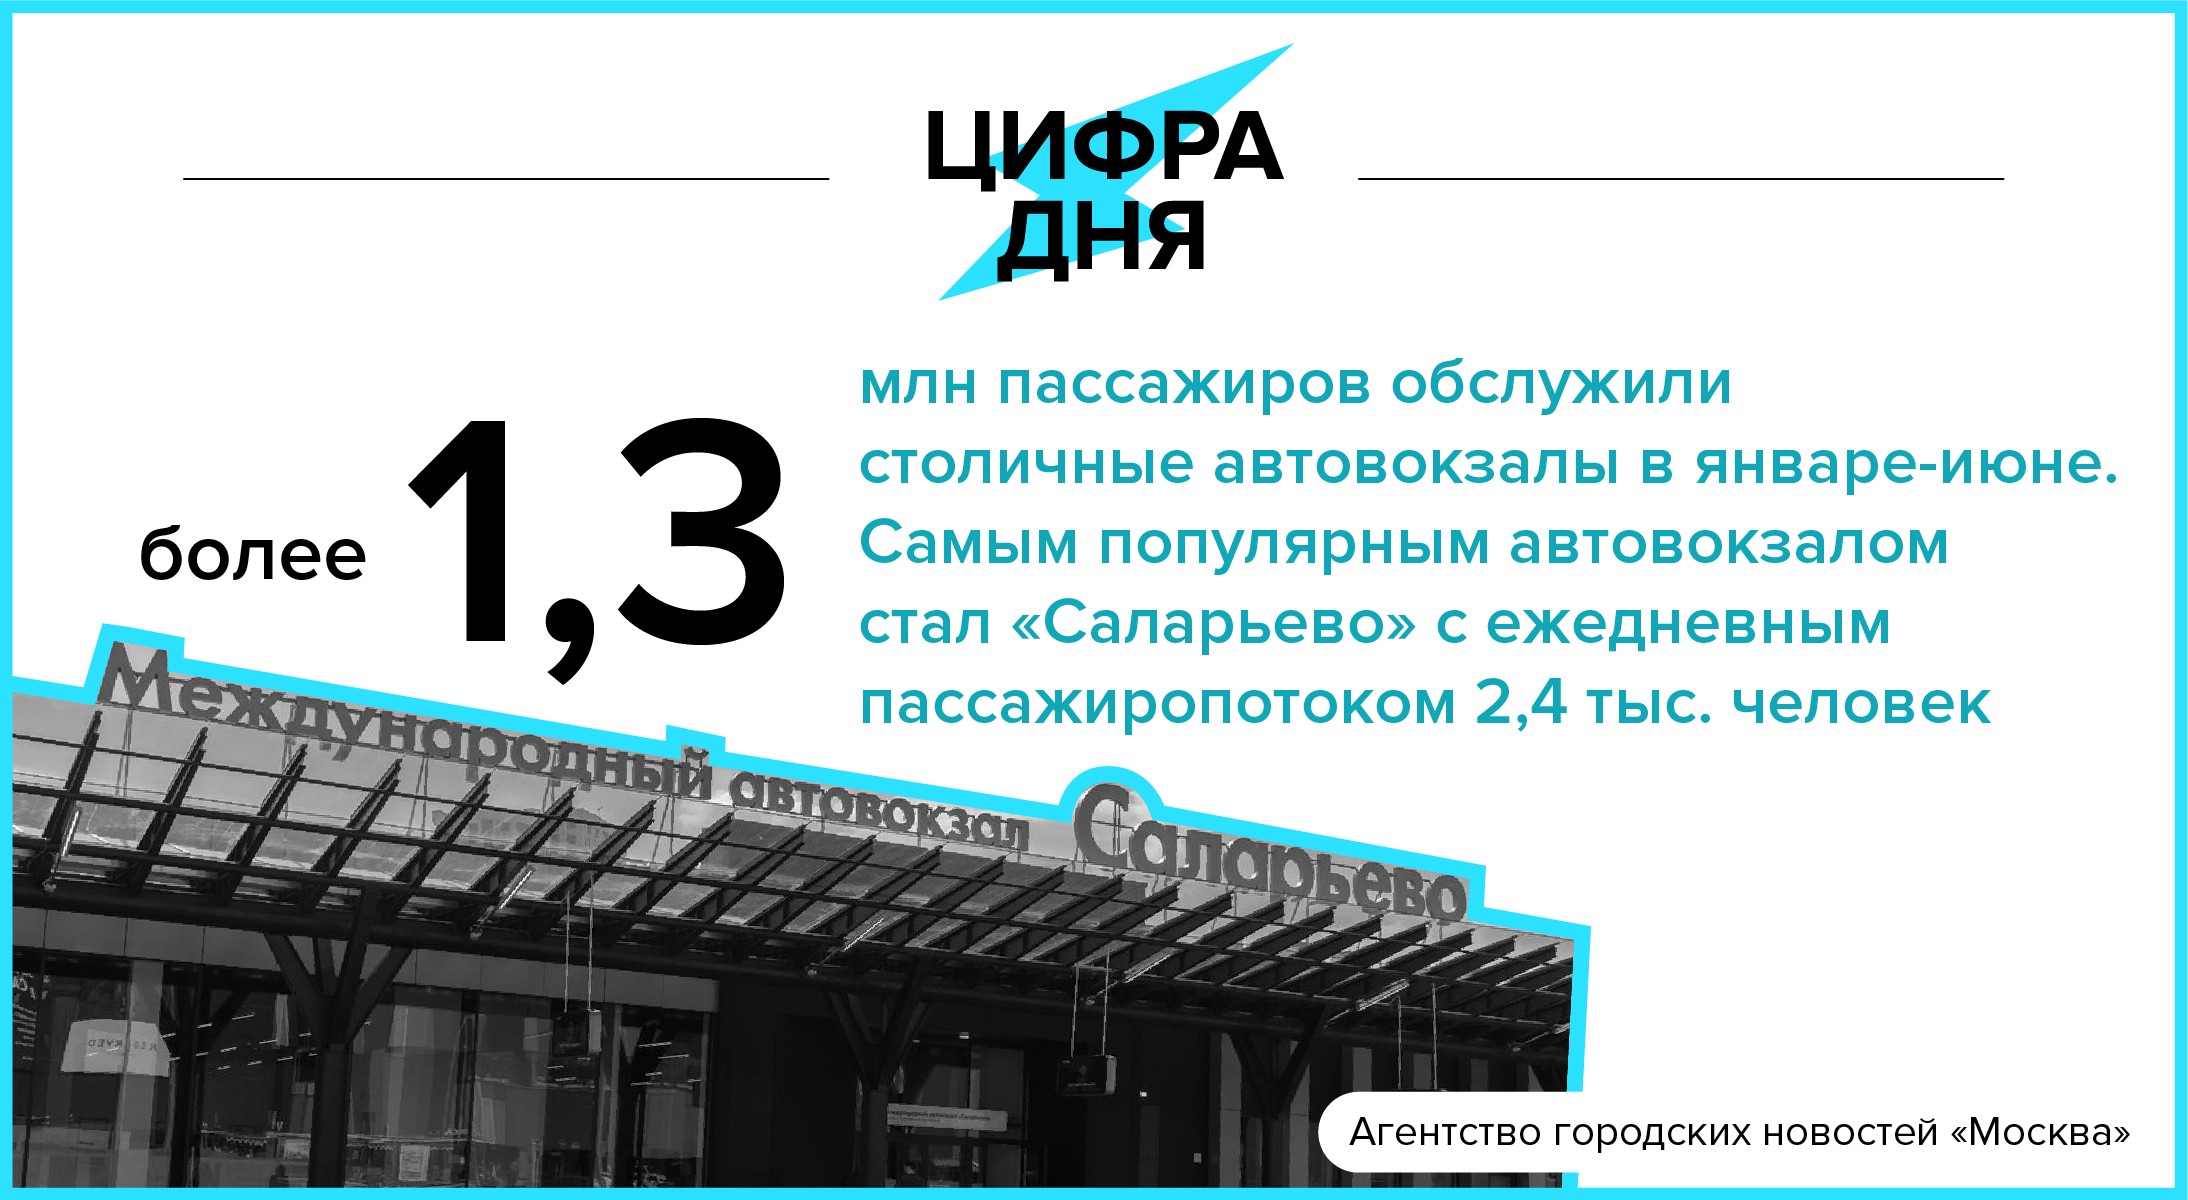 Автовокзал столичный купить билет. Агентство городских новостей Москва логотип. Дата сегодня в цифрах. 16 Июля календарь.